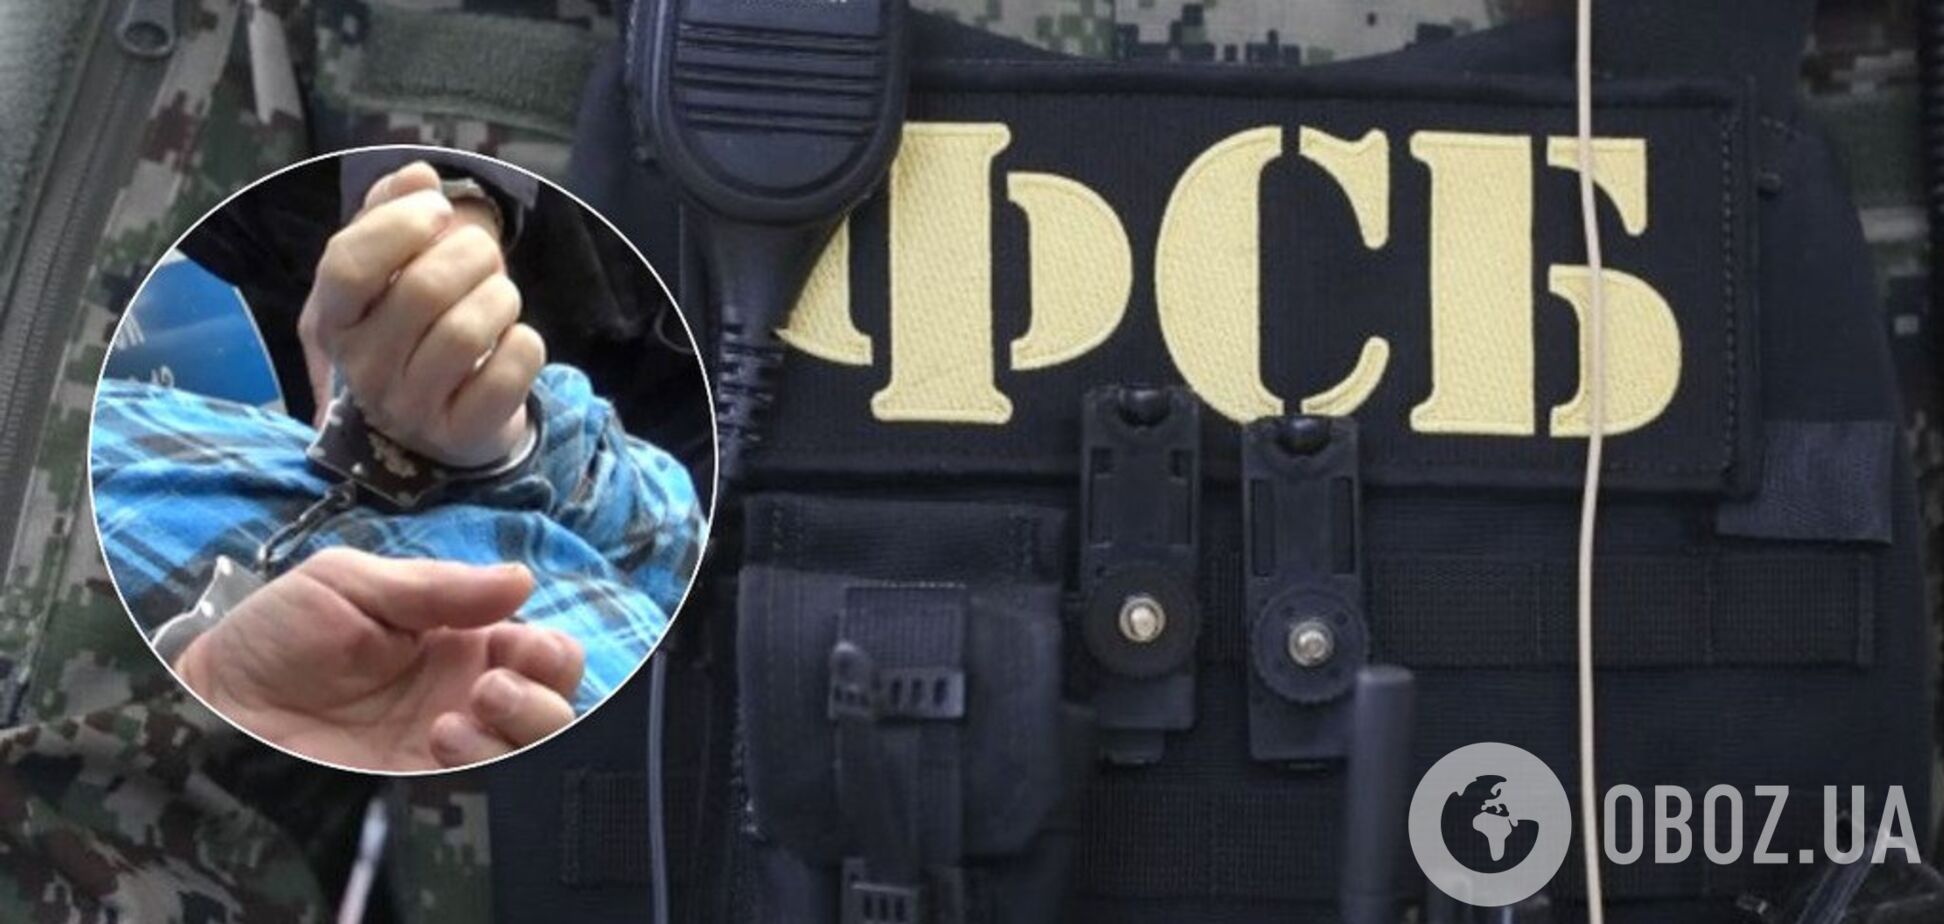 Обвиняют в госизмене: в Крыму задержали россиянина